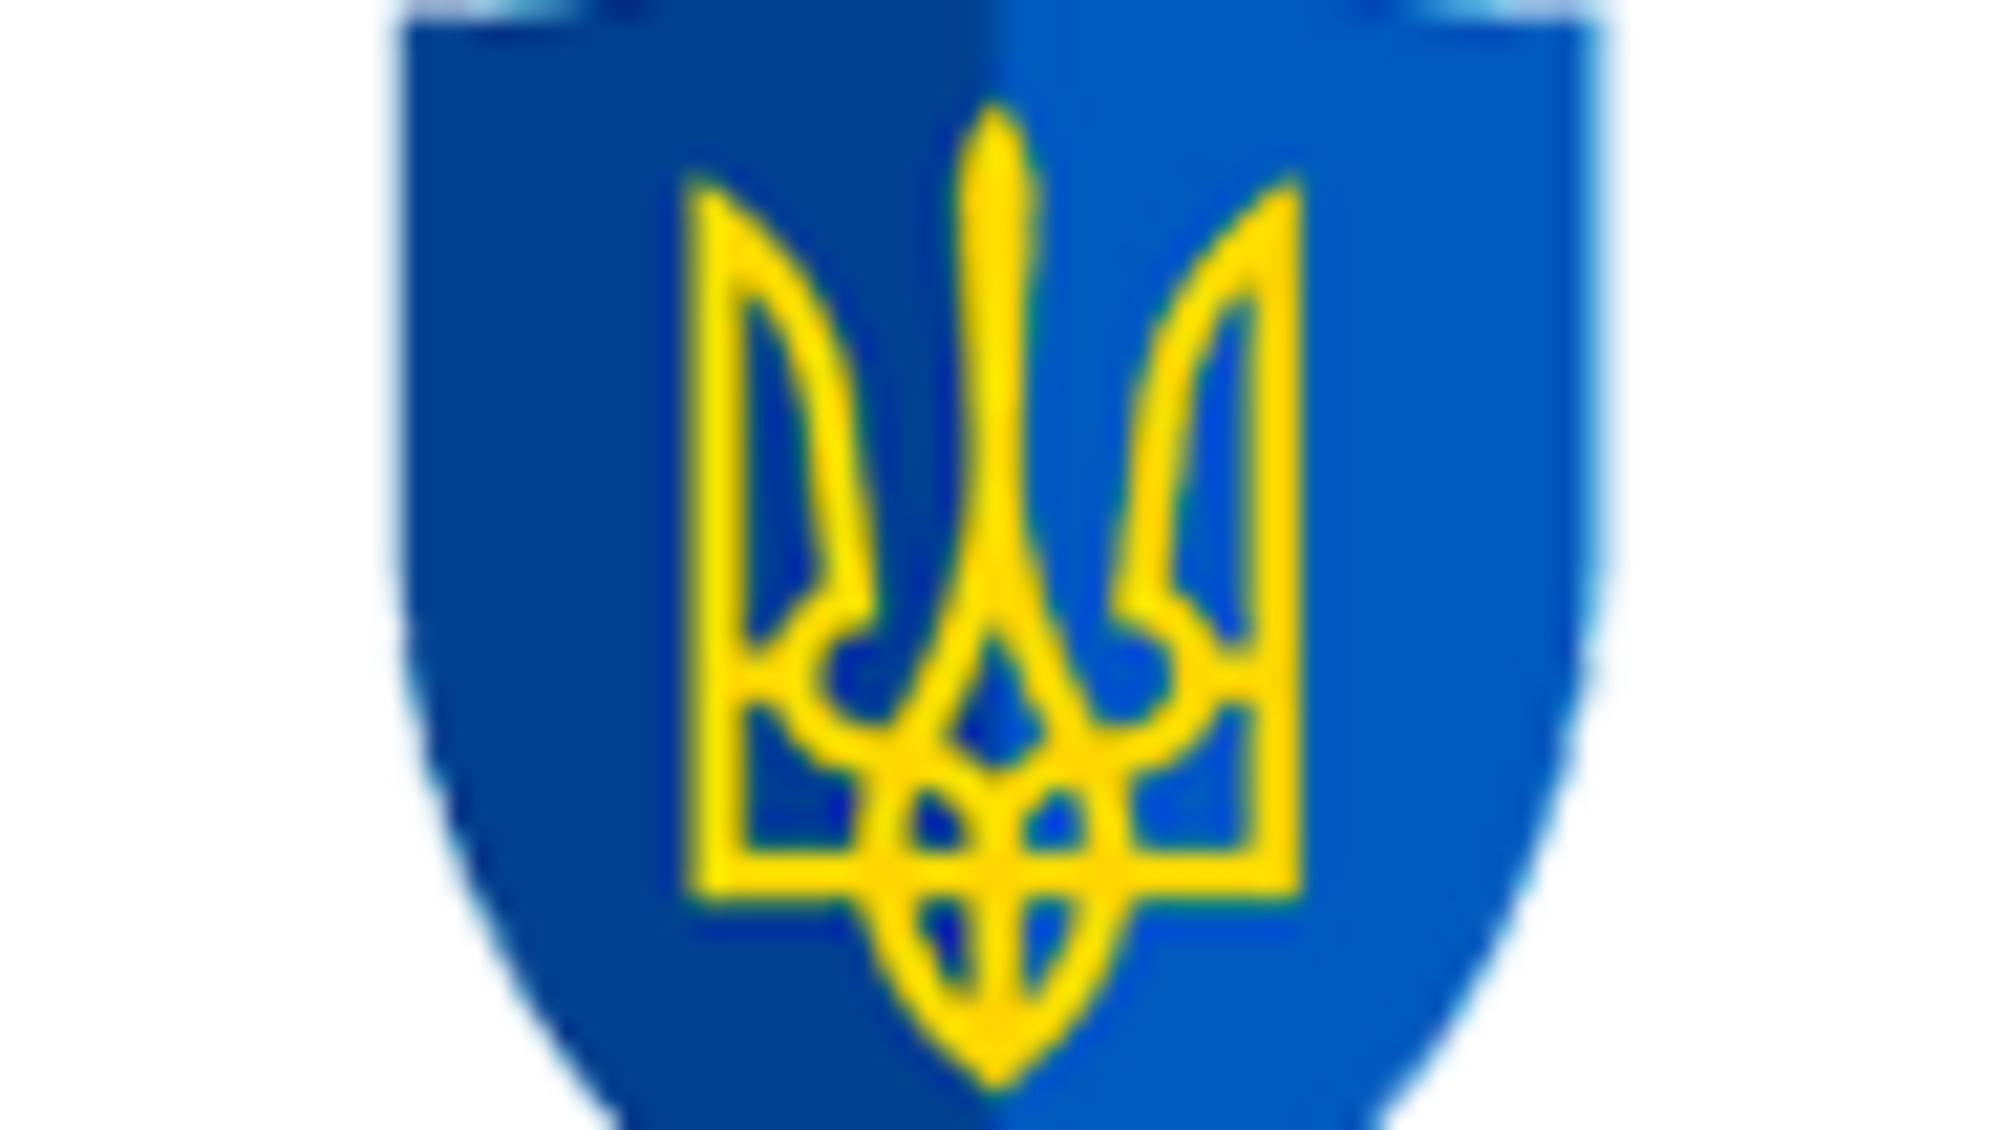 42 млн грн шкоди державі через закупівлю неякісних бронежилетів  – повідомлено про підозру ексзаступнику Міністра оборони України (ФОТО)